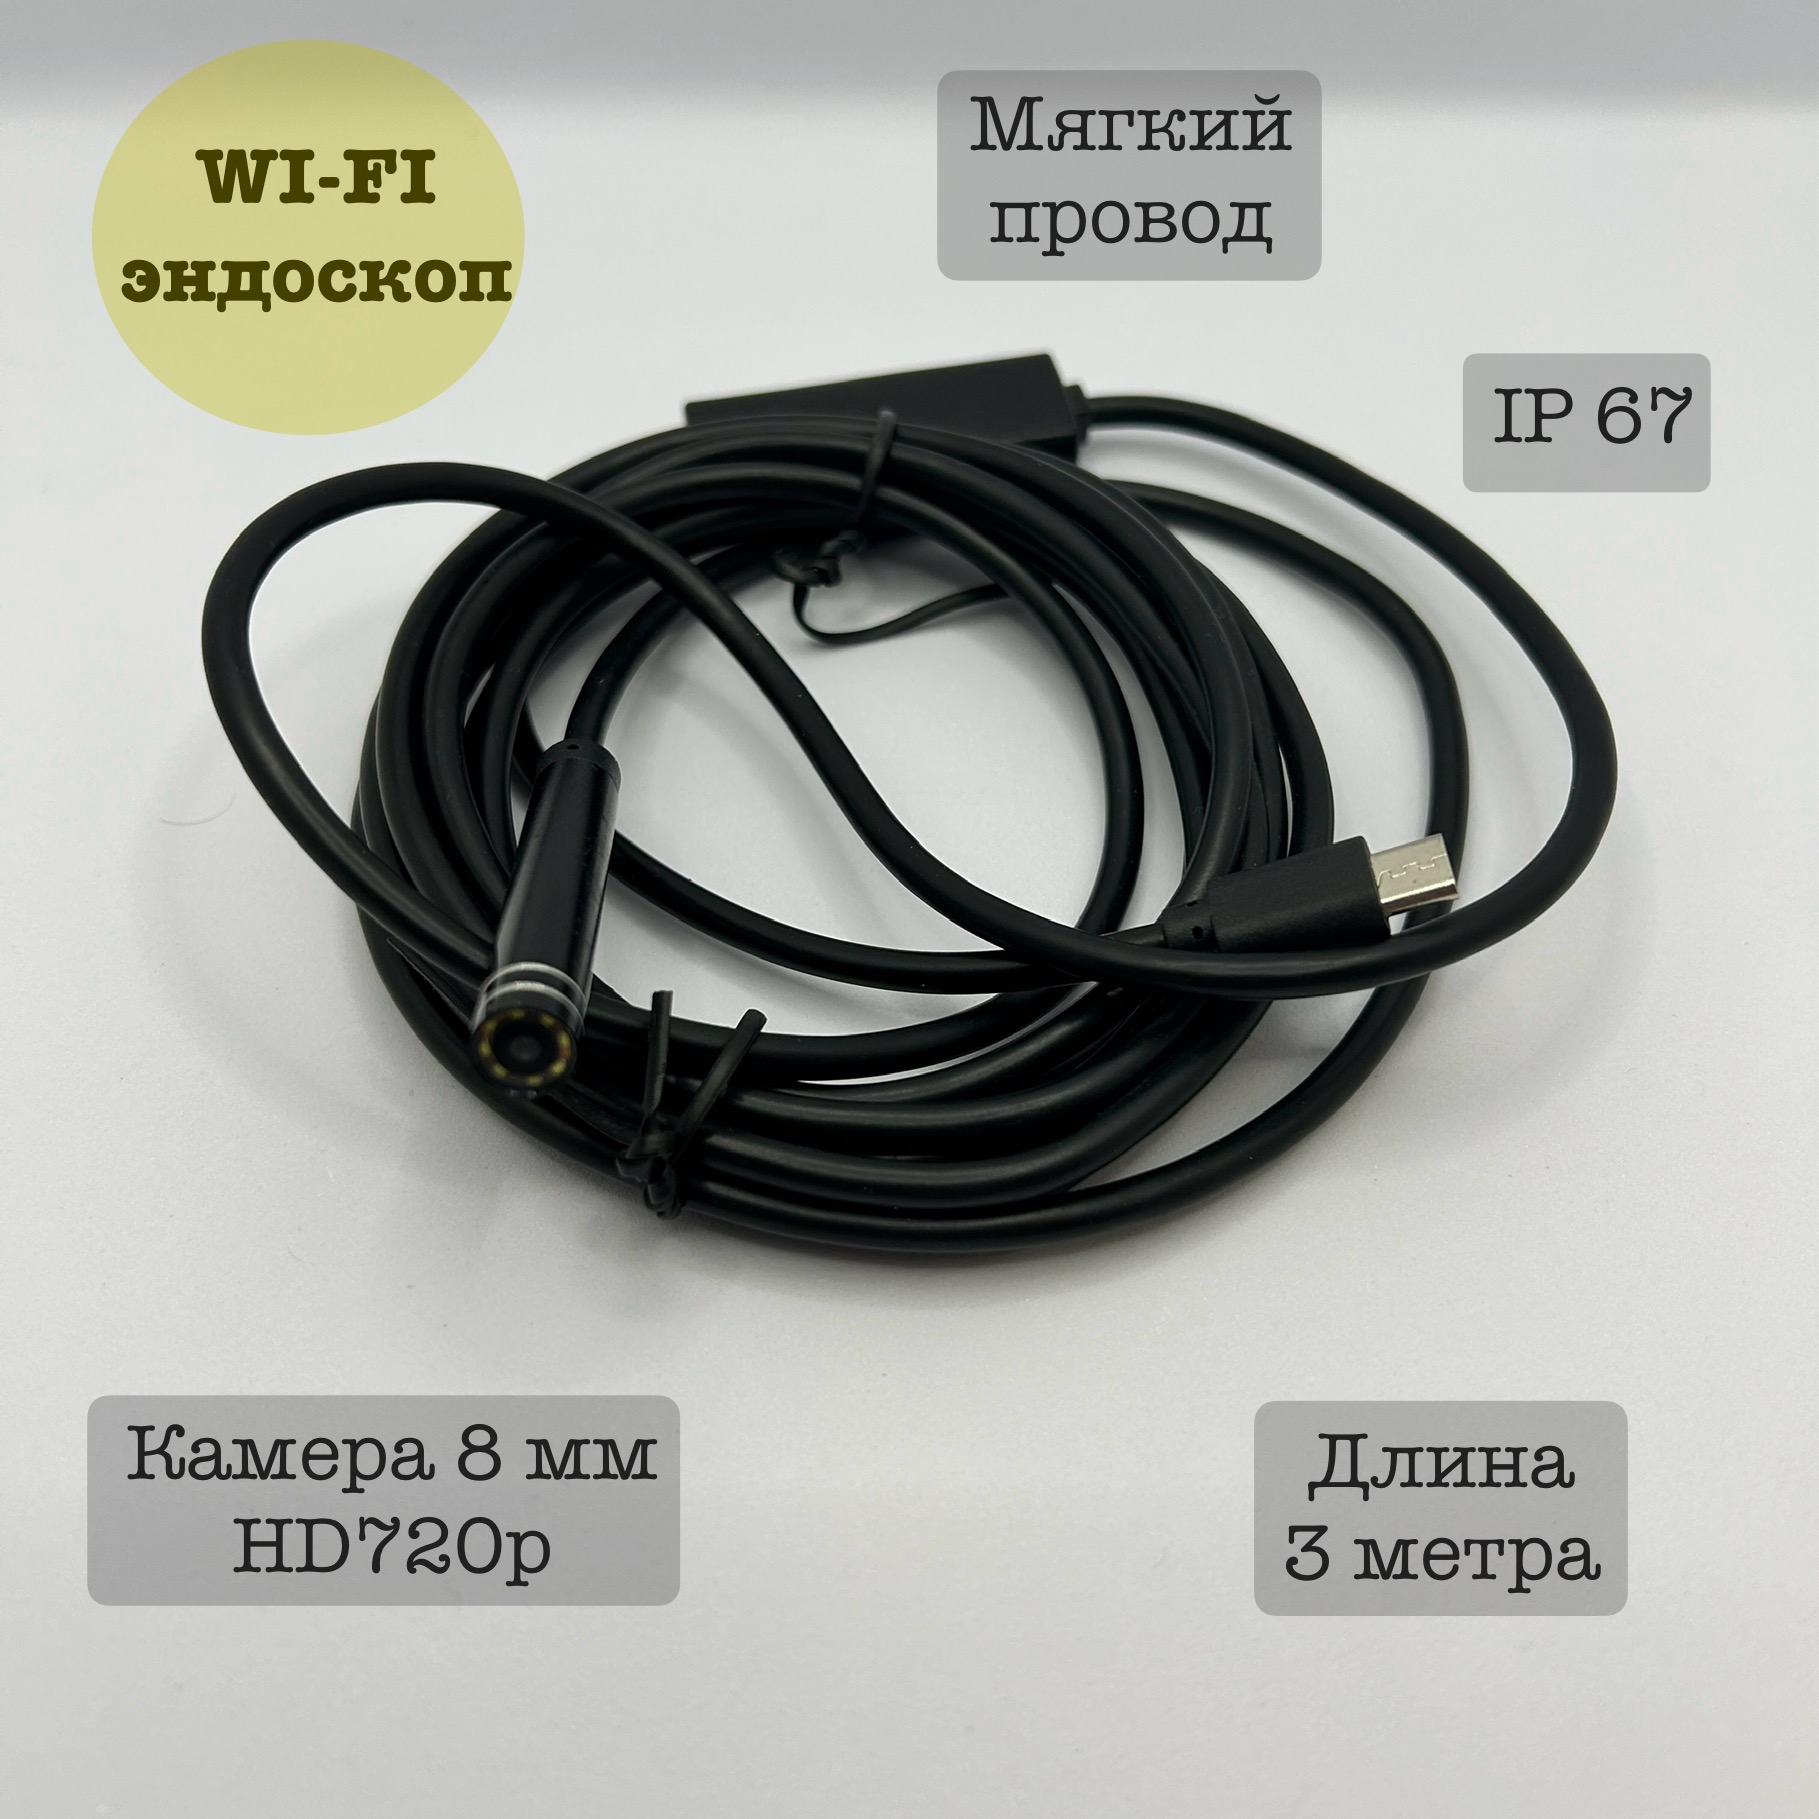 Эндоскоп Wi-fi для автомобиля YPC99-5, 3 метра, мягкий мягкий пазл с музыкальным чипом